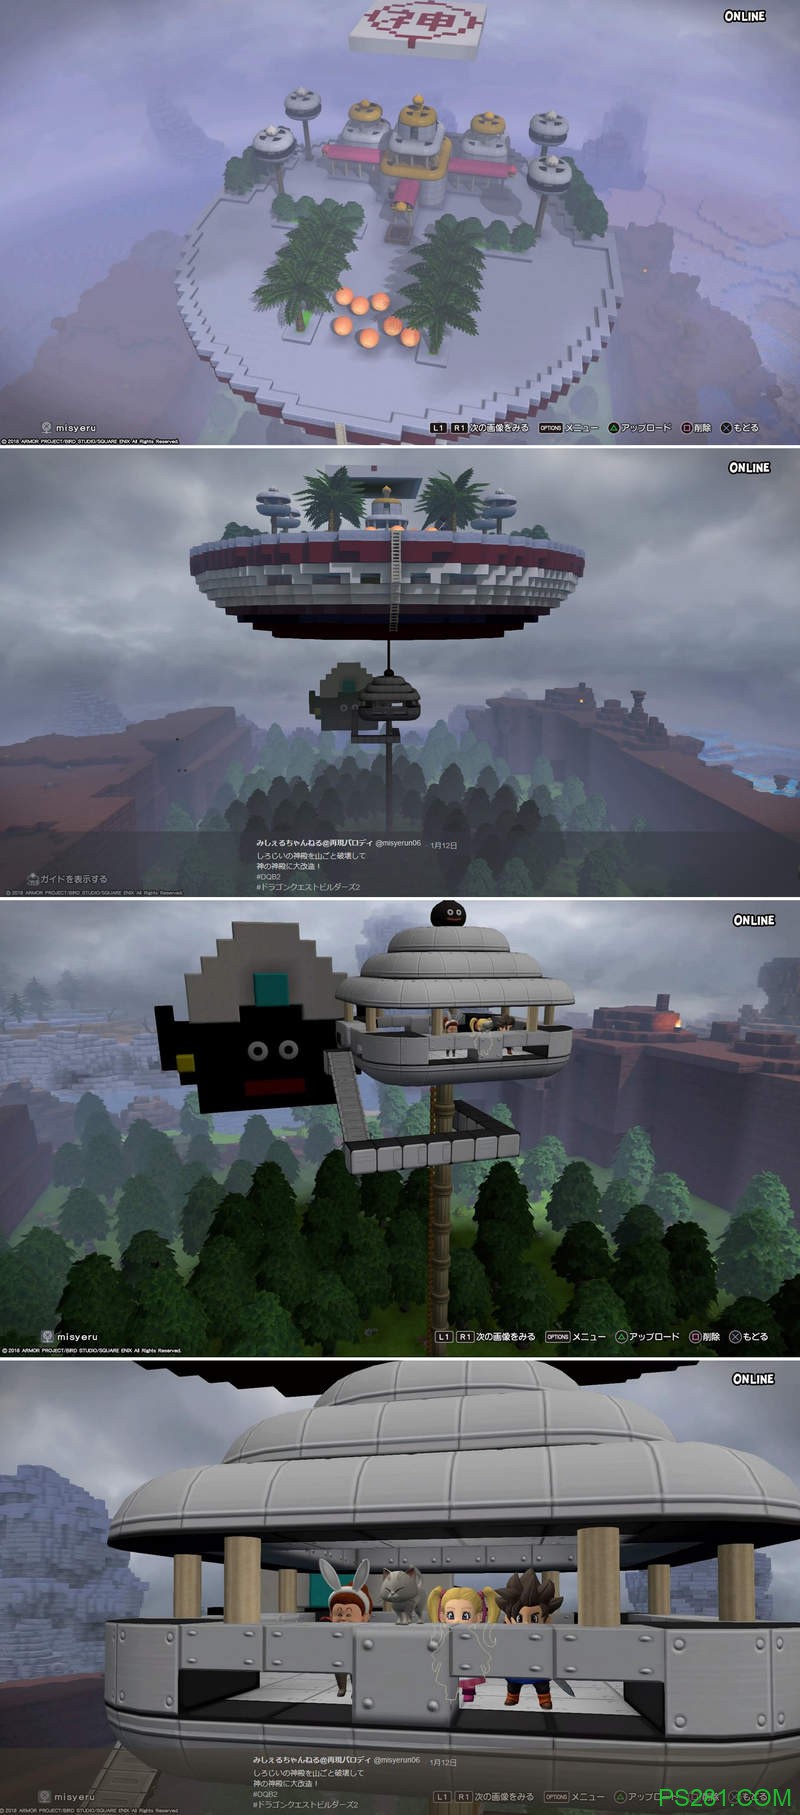 玩家分享《勇者斗恶龙创世小玩家2》攻略心得 创作优秀特色建筑物